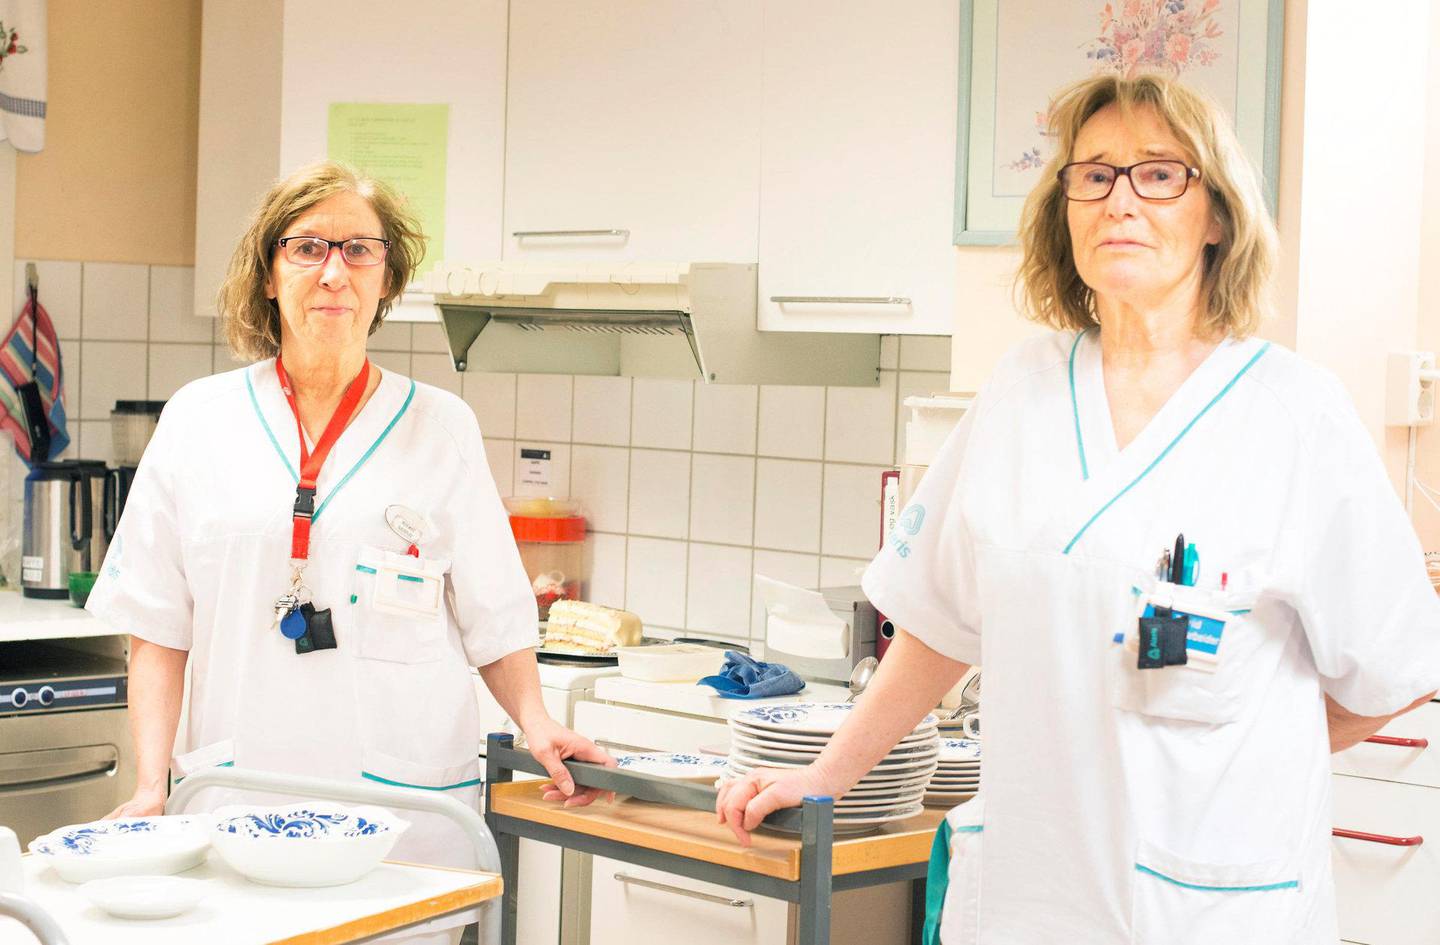 Tvinges til Pensjon: Inger-Marie Vinje (62) og Turid Olsen (64) hadde ikke tenkt til å forlate arbeidslivet helt enda. Men dersom arbeidsplassen deres forsvinner ser de ingen annen utvei enn å gå av med pensjon.